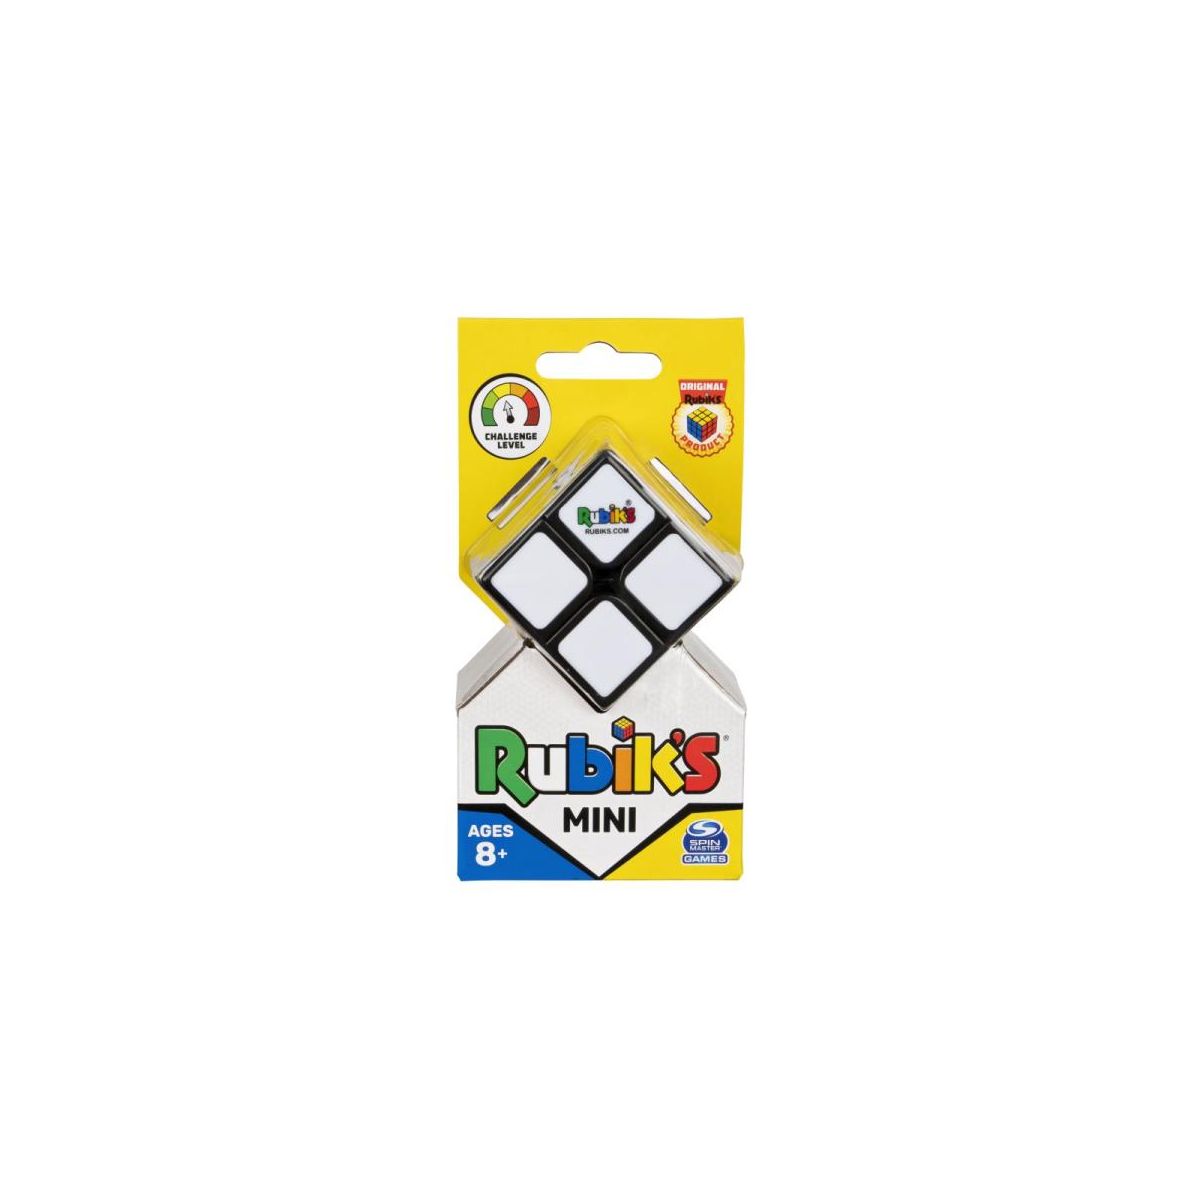 Układanka Spin Master kostka Rubika 2x2 (6064345)